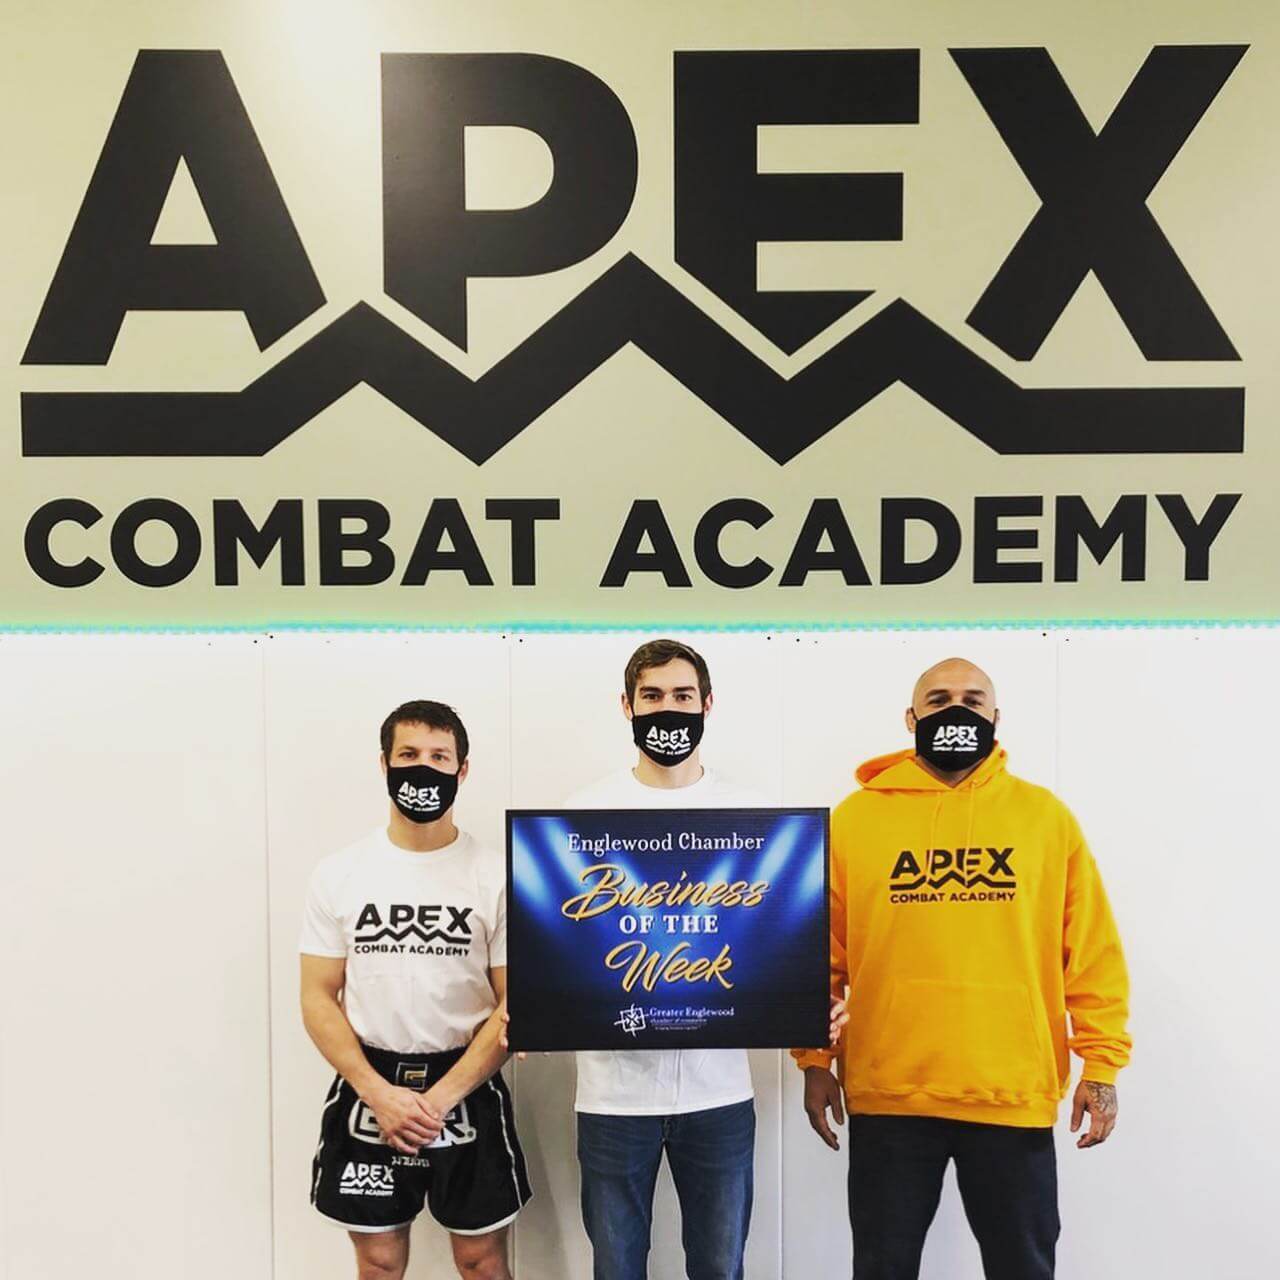 01.25.21 - Apex Combat Academy